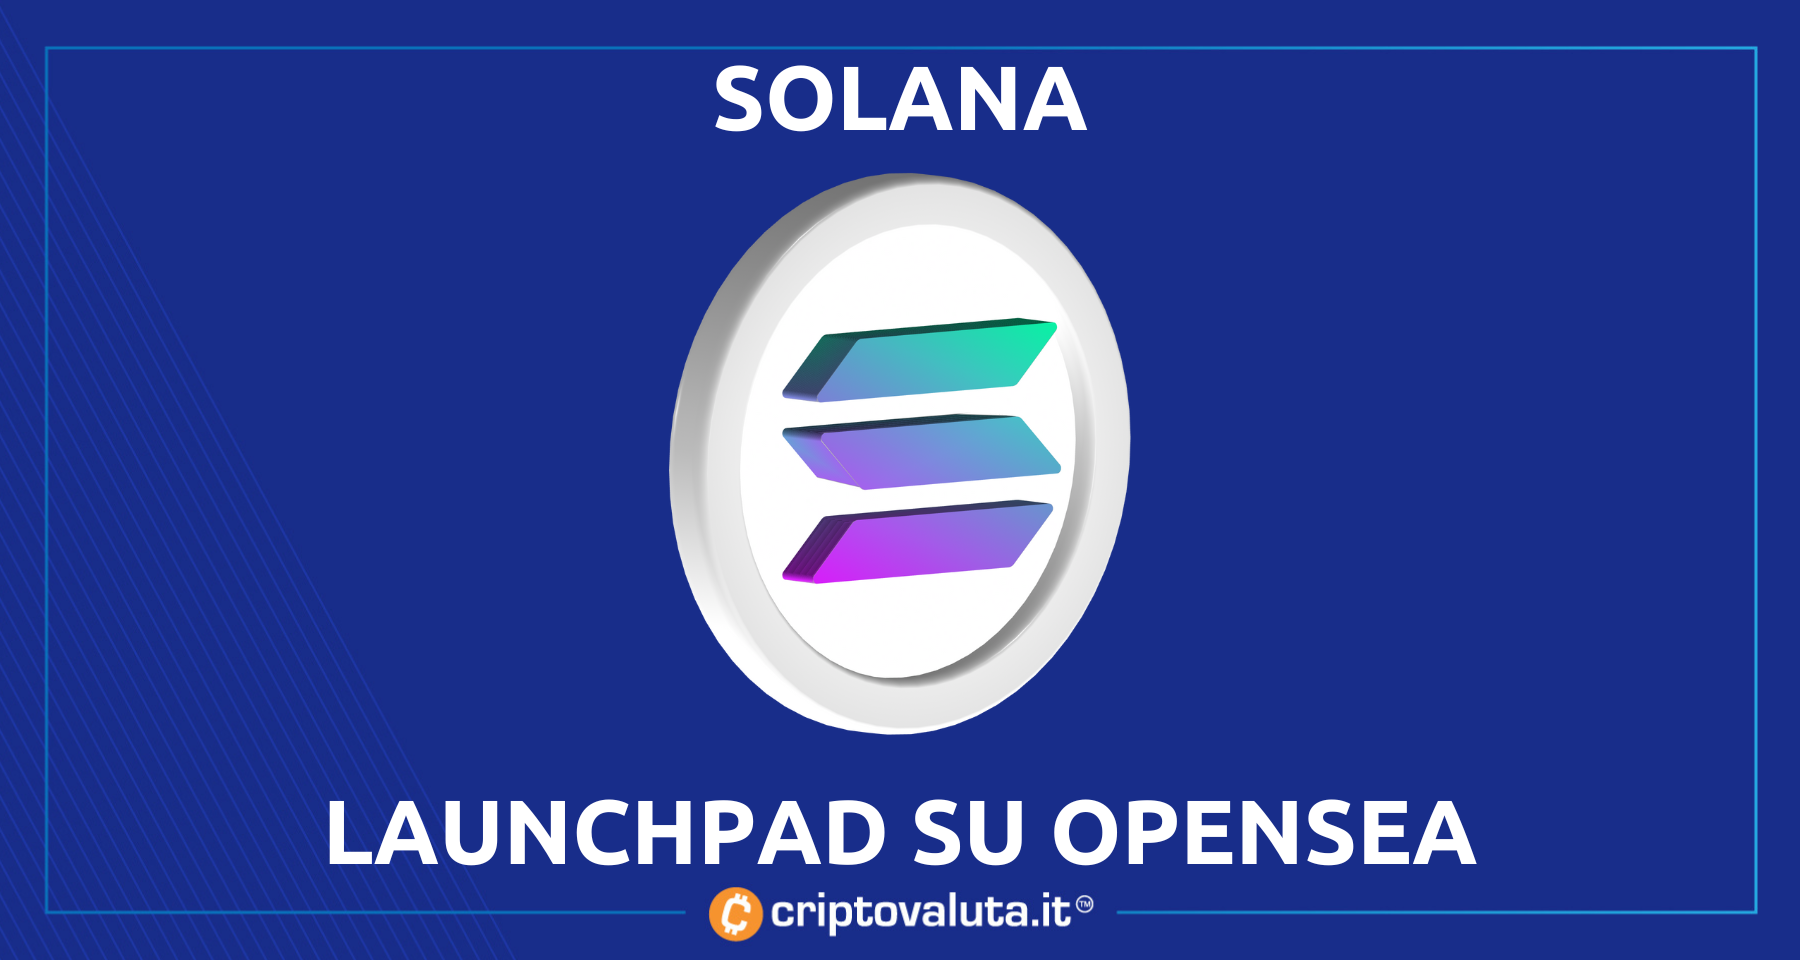 Launchpad Solana su OpenSea | Notizia bullish per tutto l’ecosistema $SOL